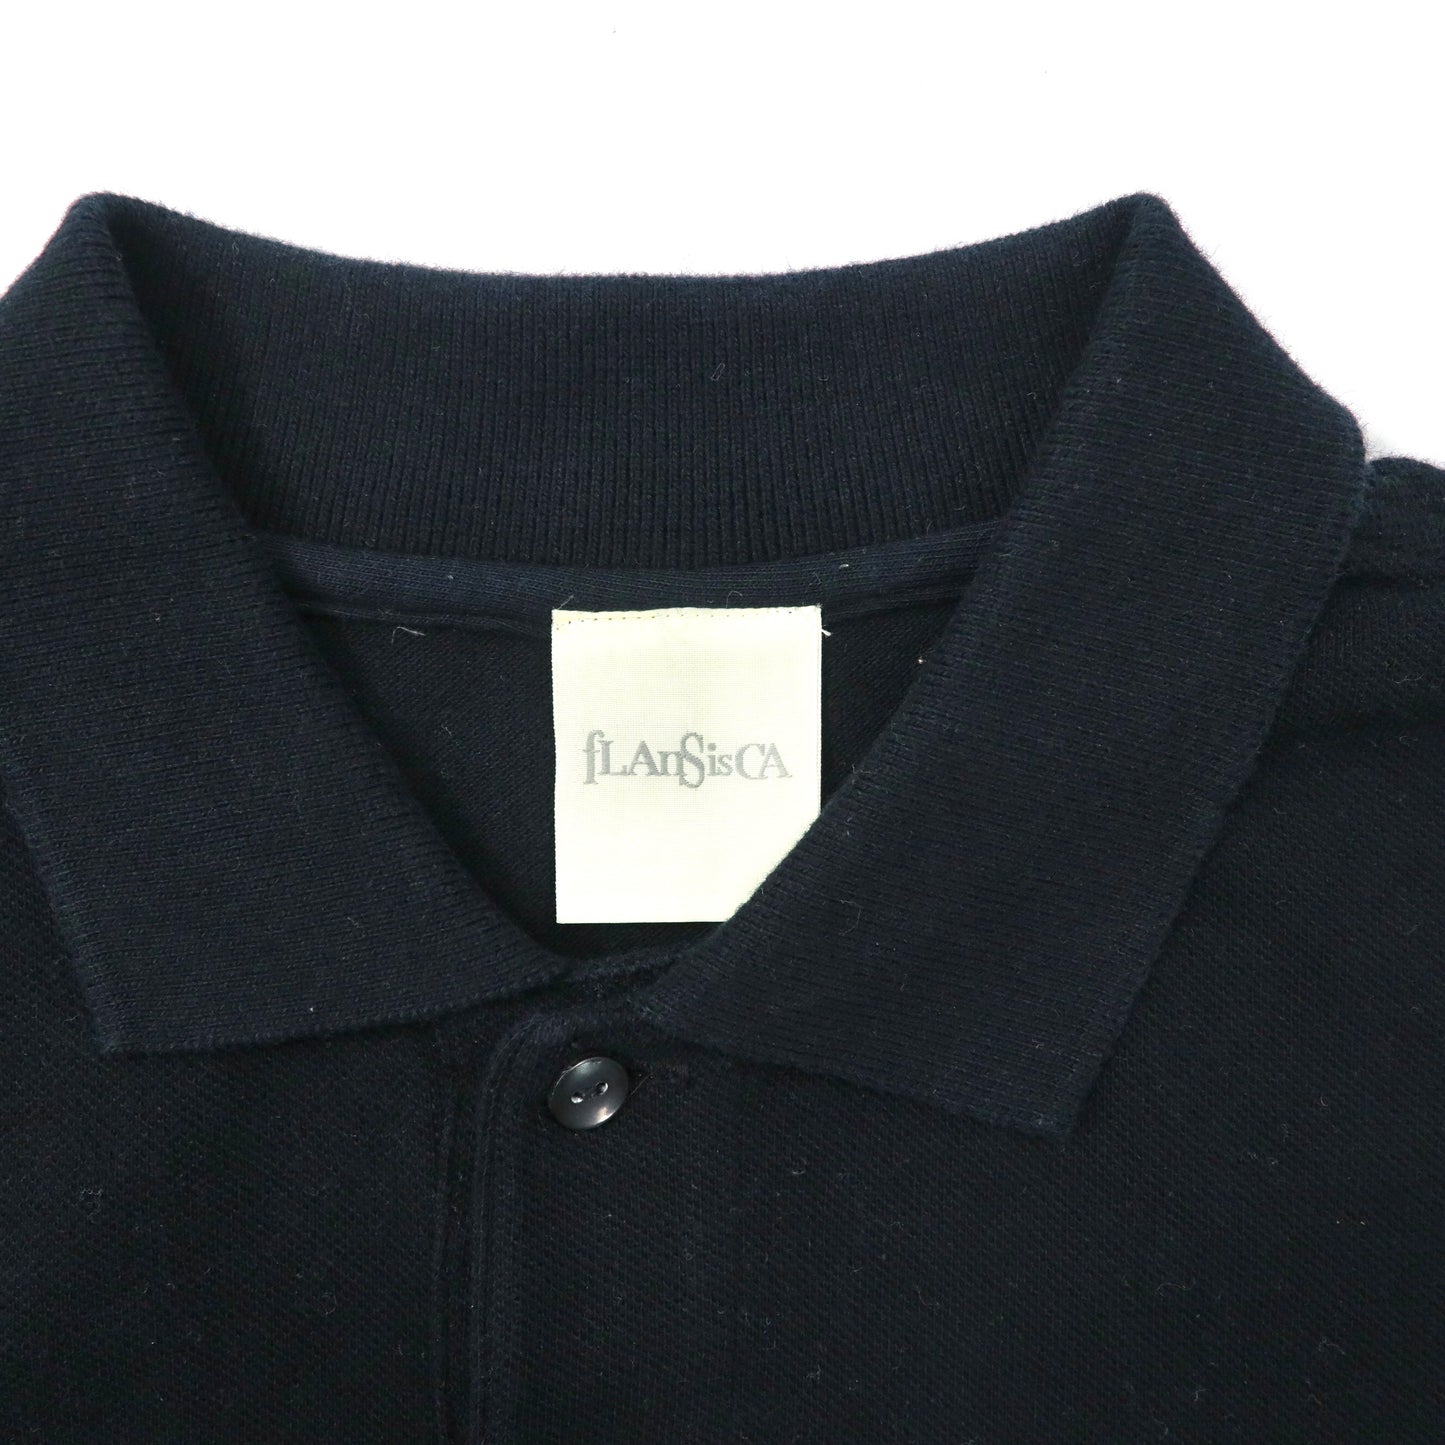 fLAnsisCA ポロシャツ M ブラック コットン ワンポイントロゴ刺繍 BEAMS取り扱い